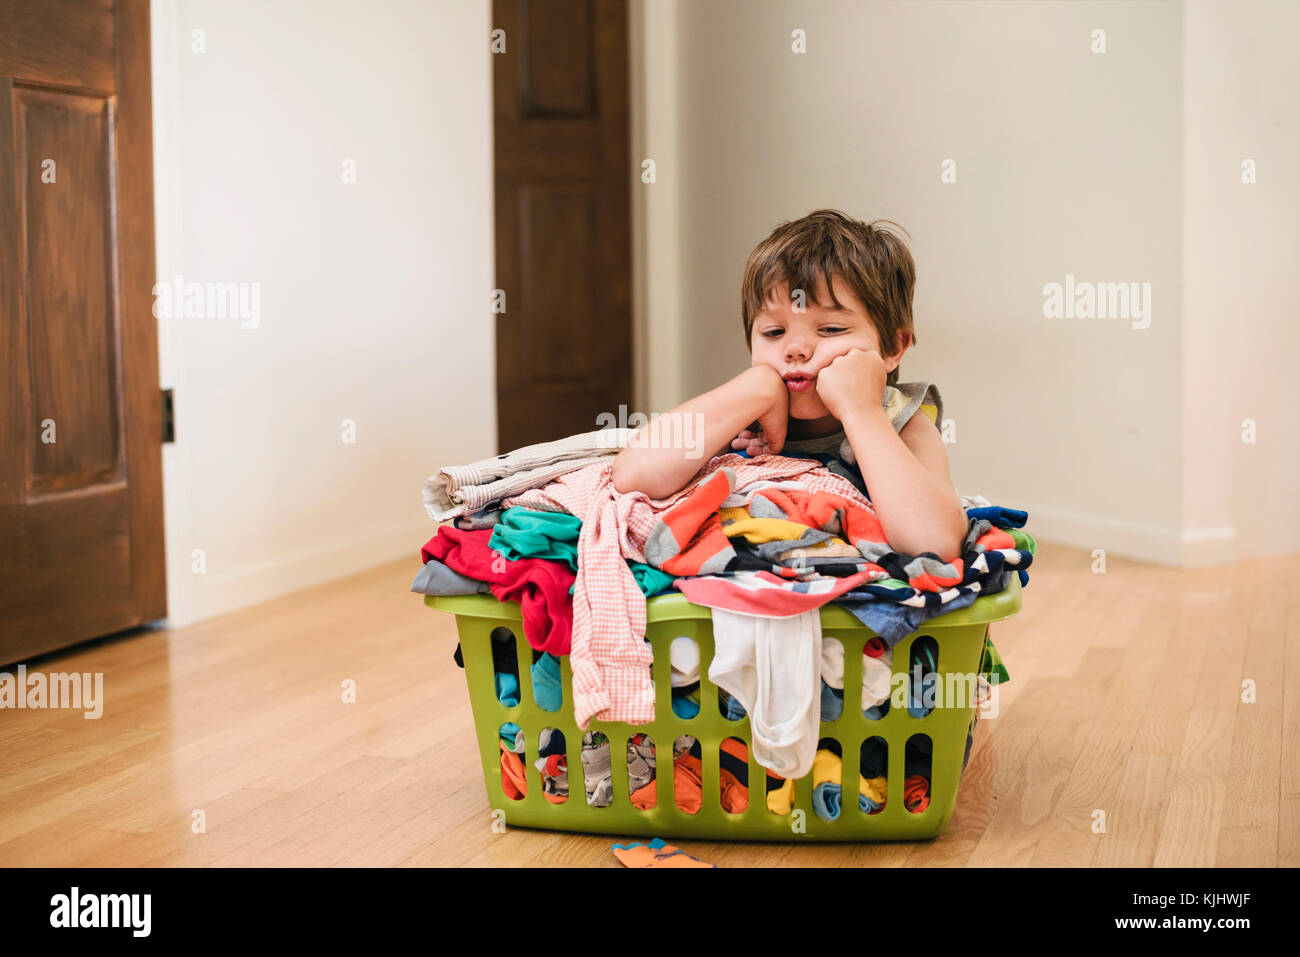 Stanco ragazzo seduto sul pavimento appoggiandosi a un servizio lavanderia basked riempito con vestiti Foto Stock